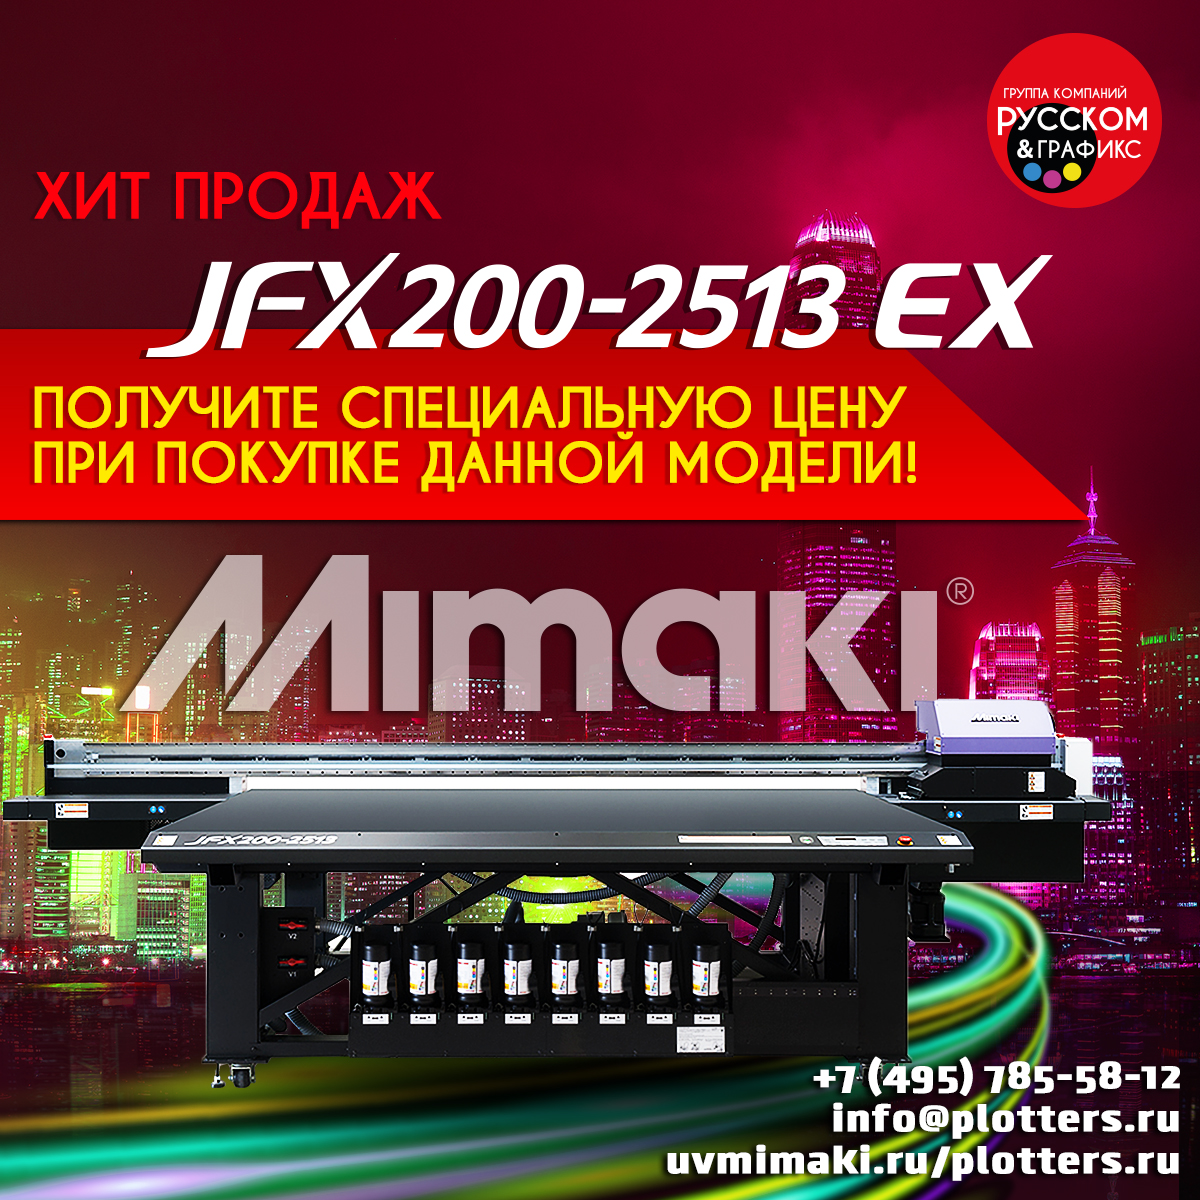 Не упустите свой шанс приобрести Mimaki JFX200-2513 EX по специальной цене!